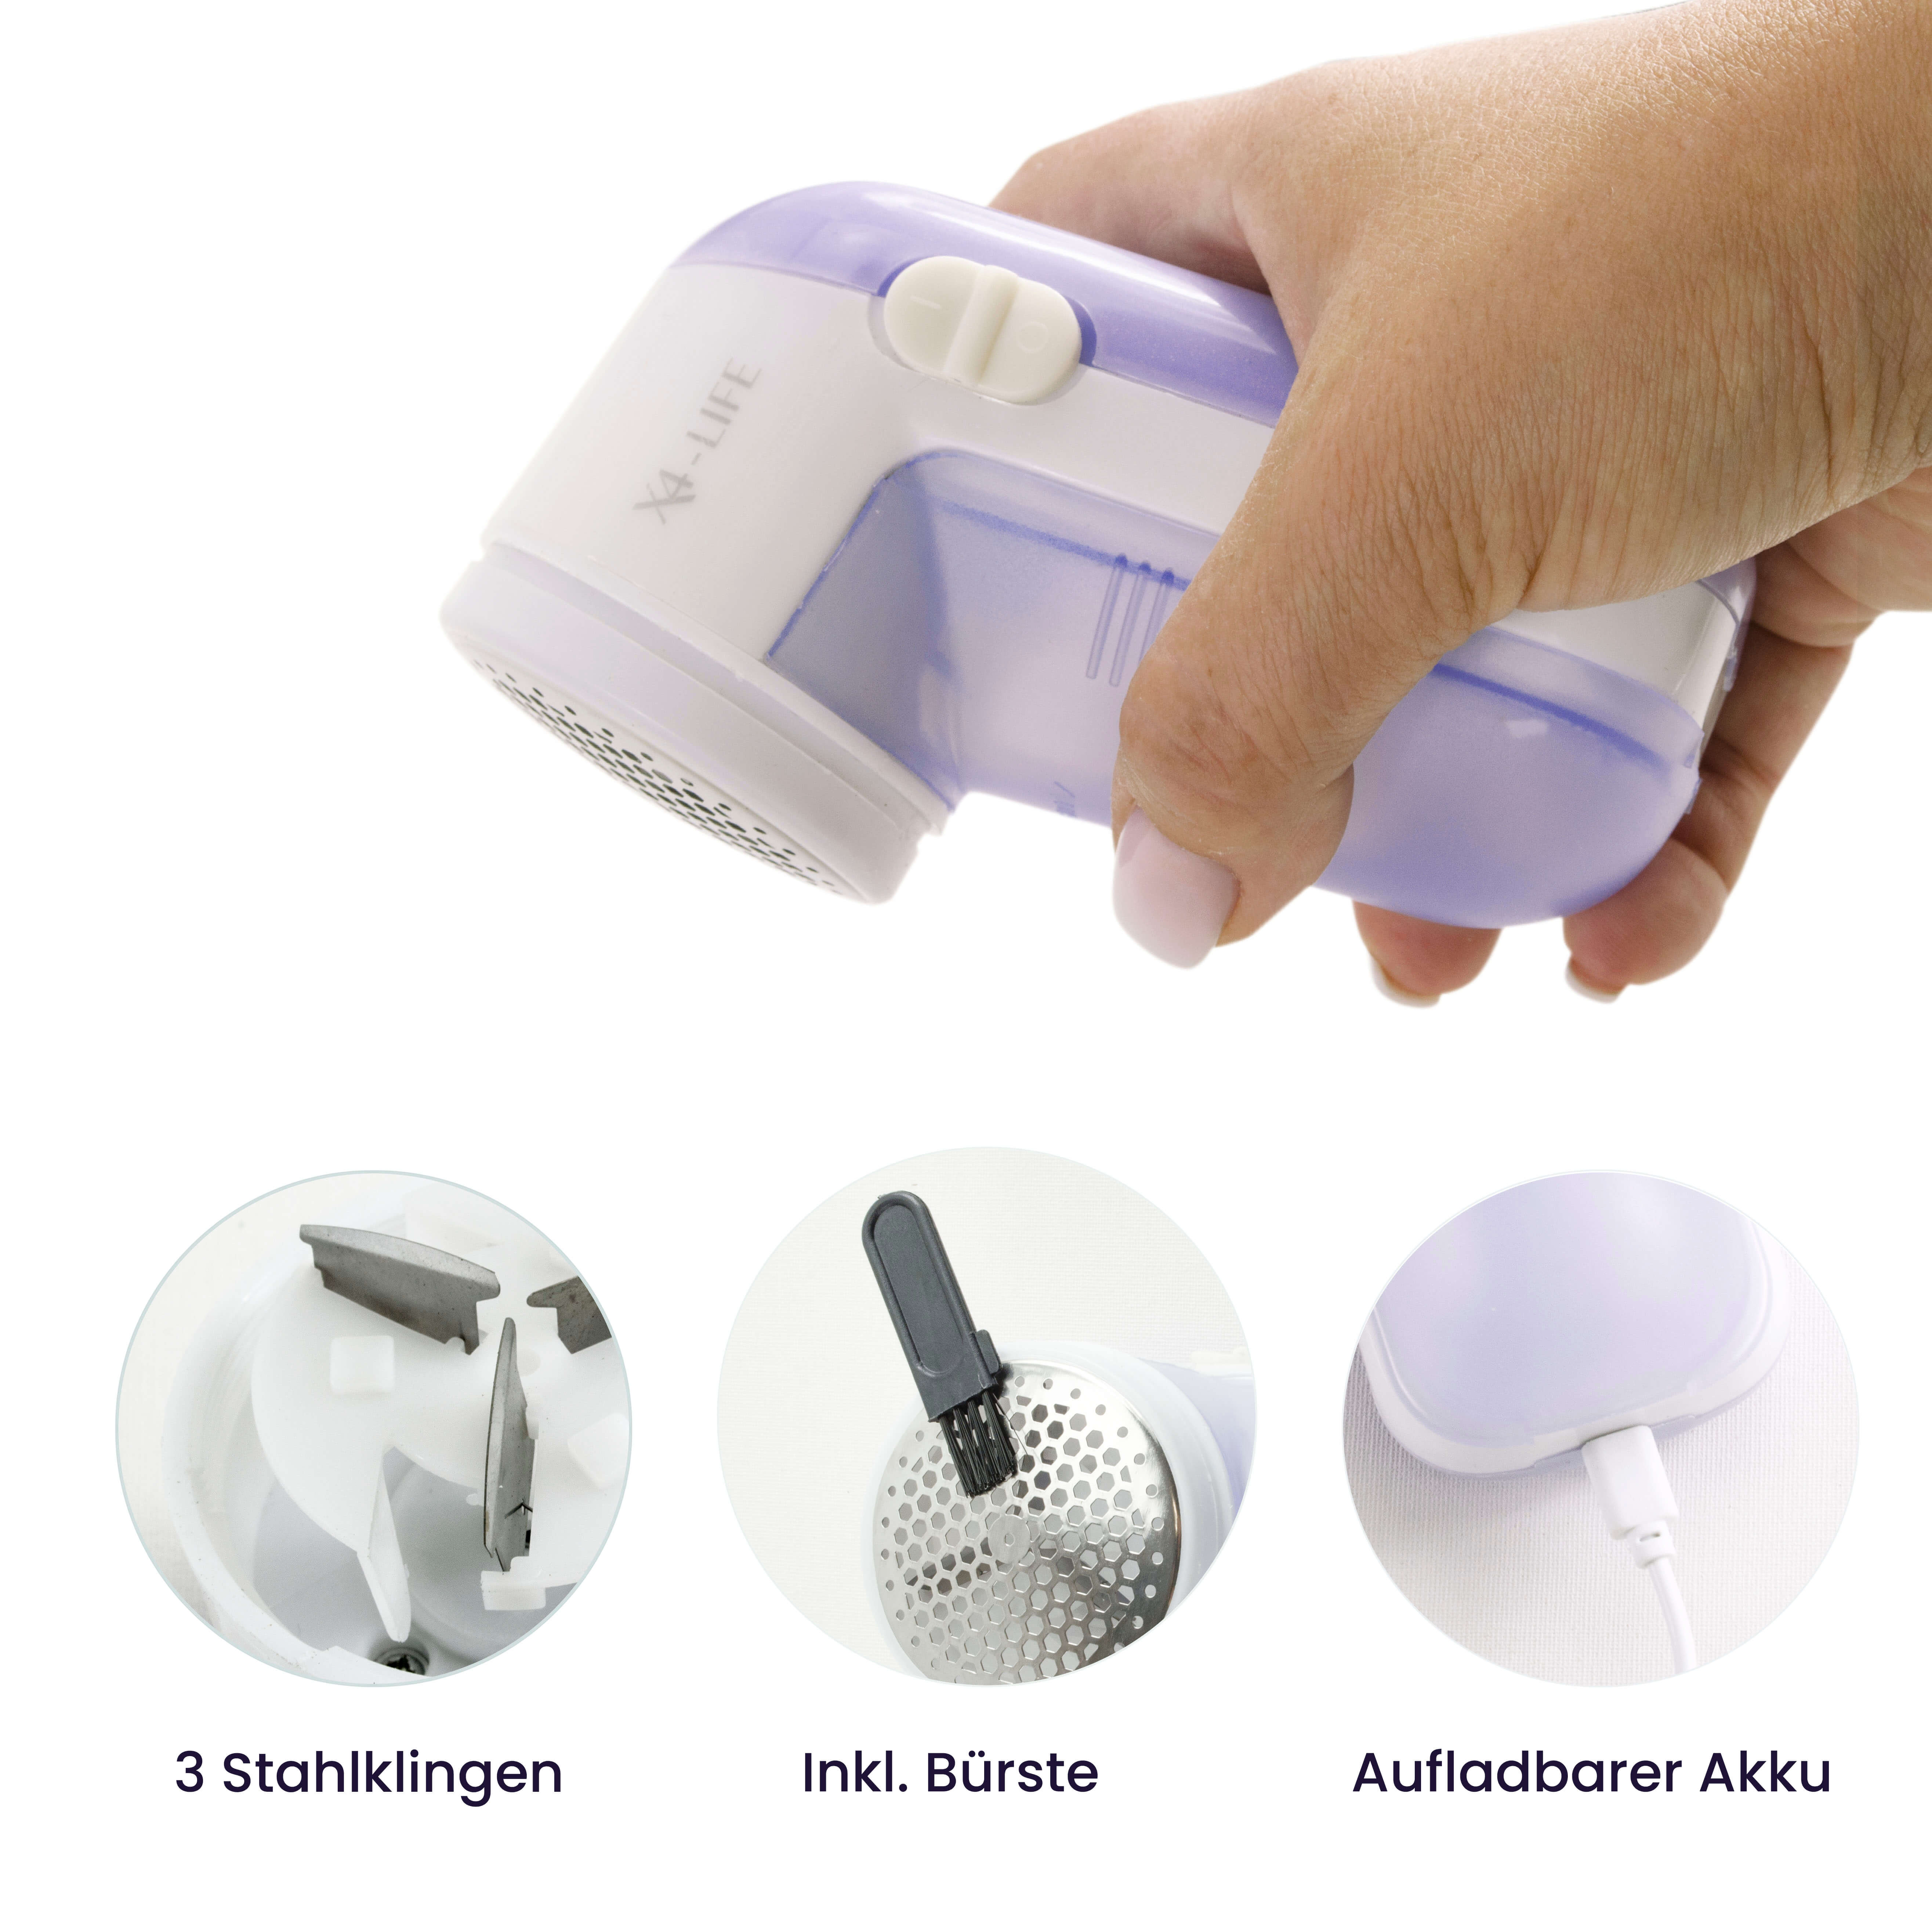 X4-LIFE Akku Fusselentferner, USB Fusselrasierer für Kleidung und Stoffmöbeln, rostfreie Stahlklingen, max. Leistung 5W